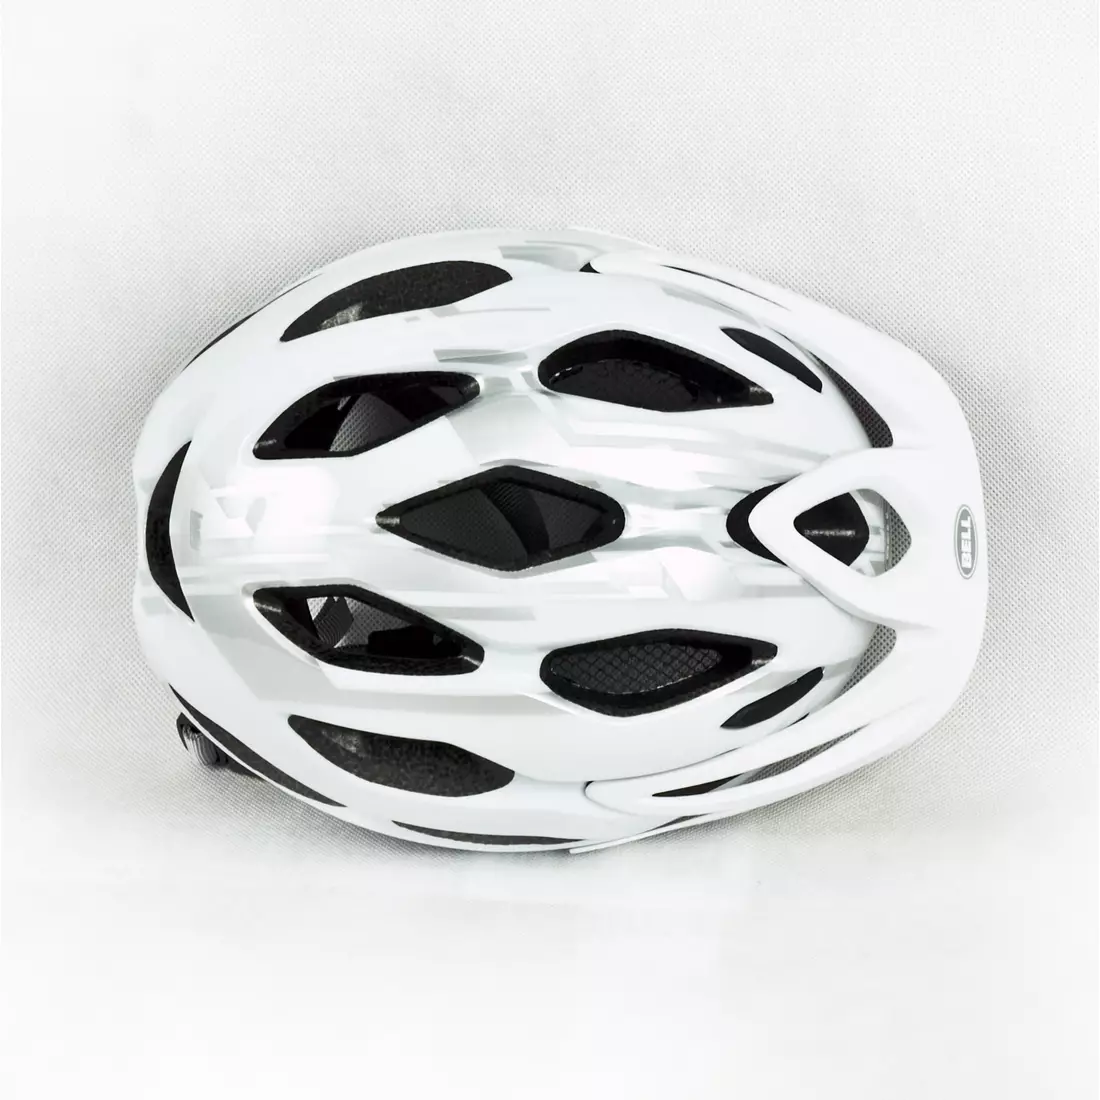 BELL INDY - kerékpáros sisak, fehér és ezüst